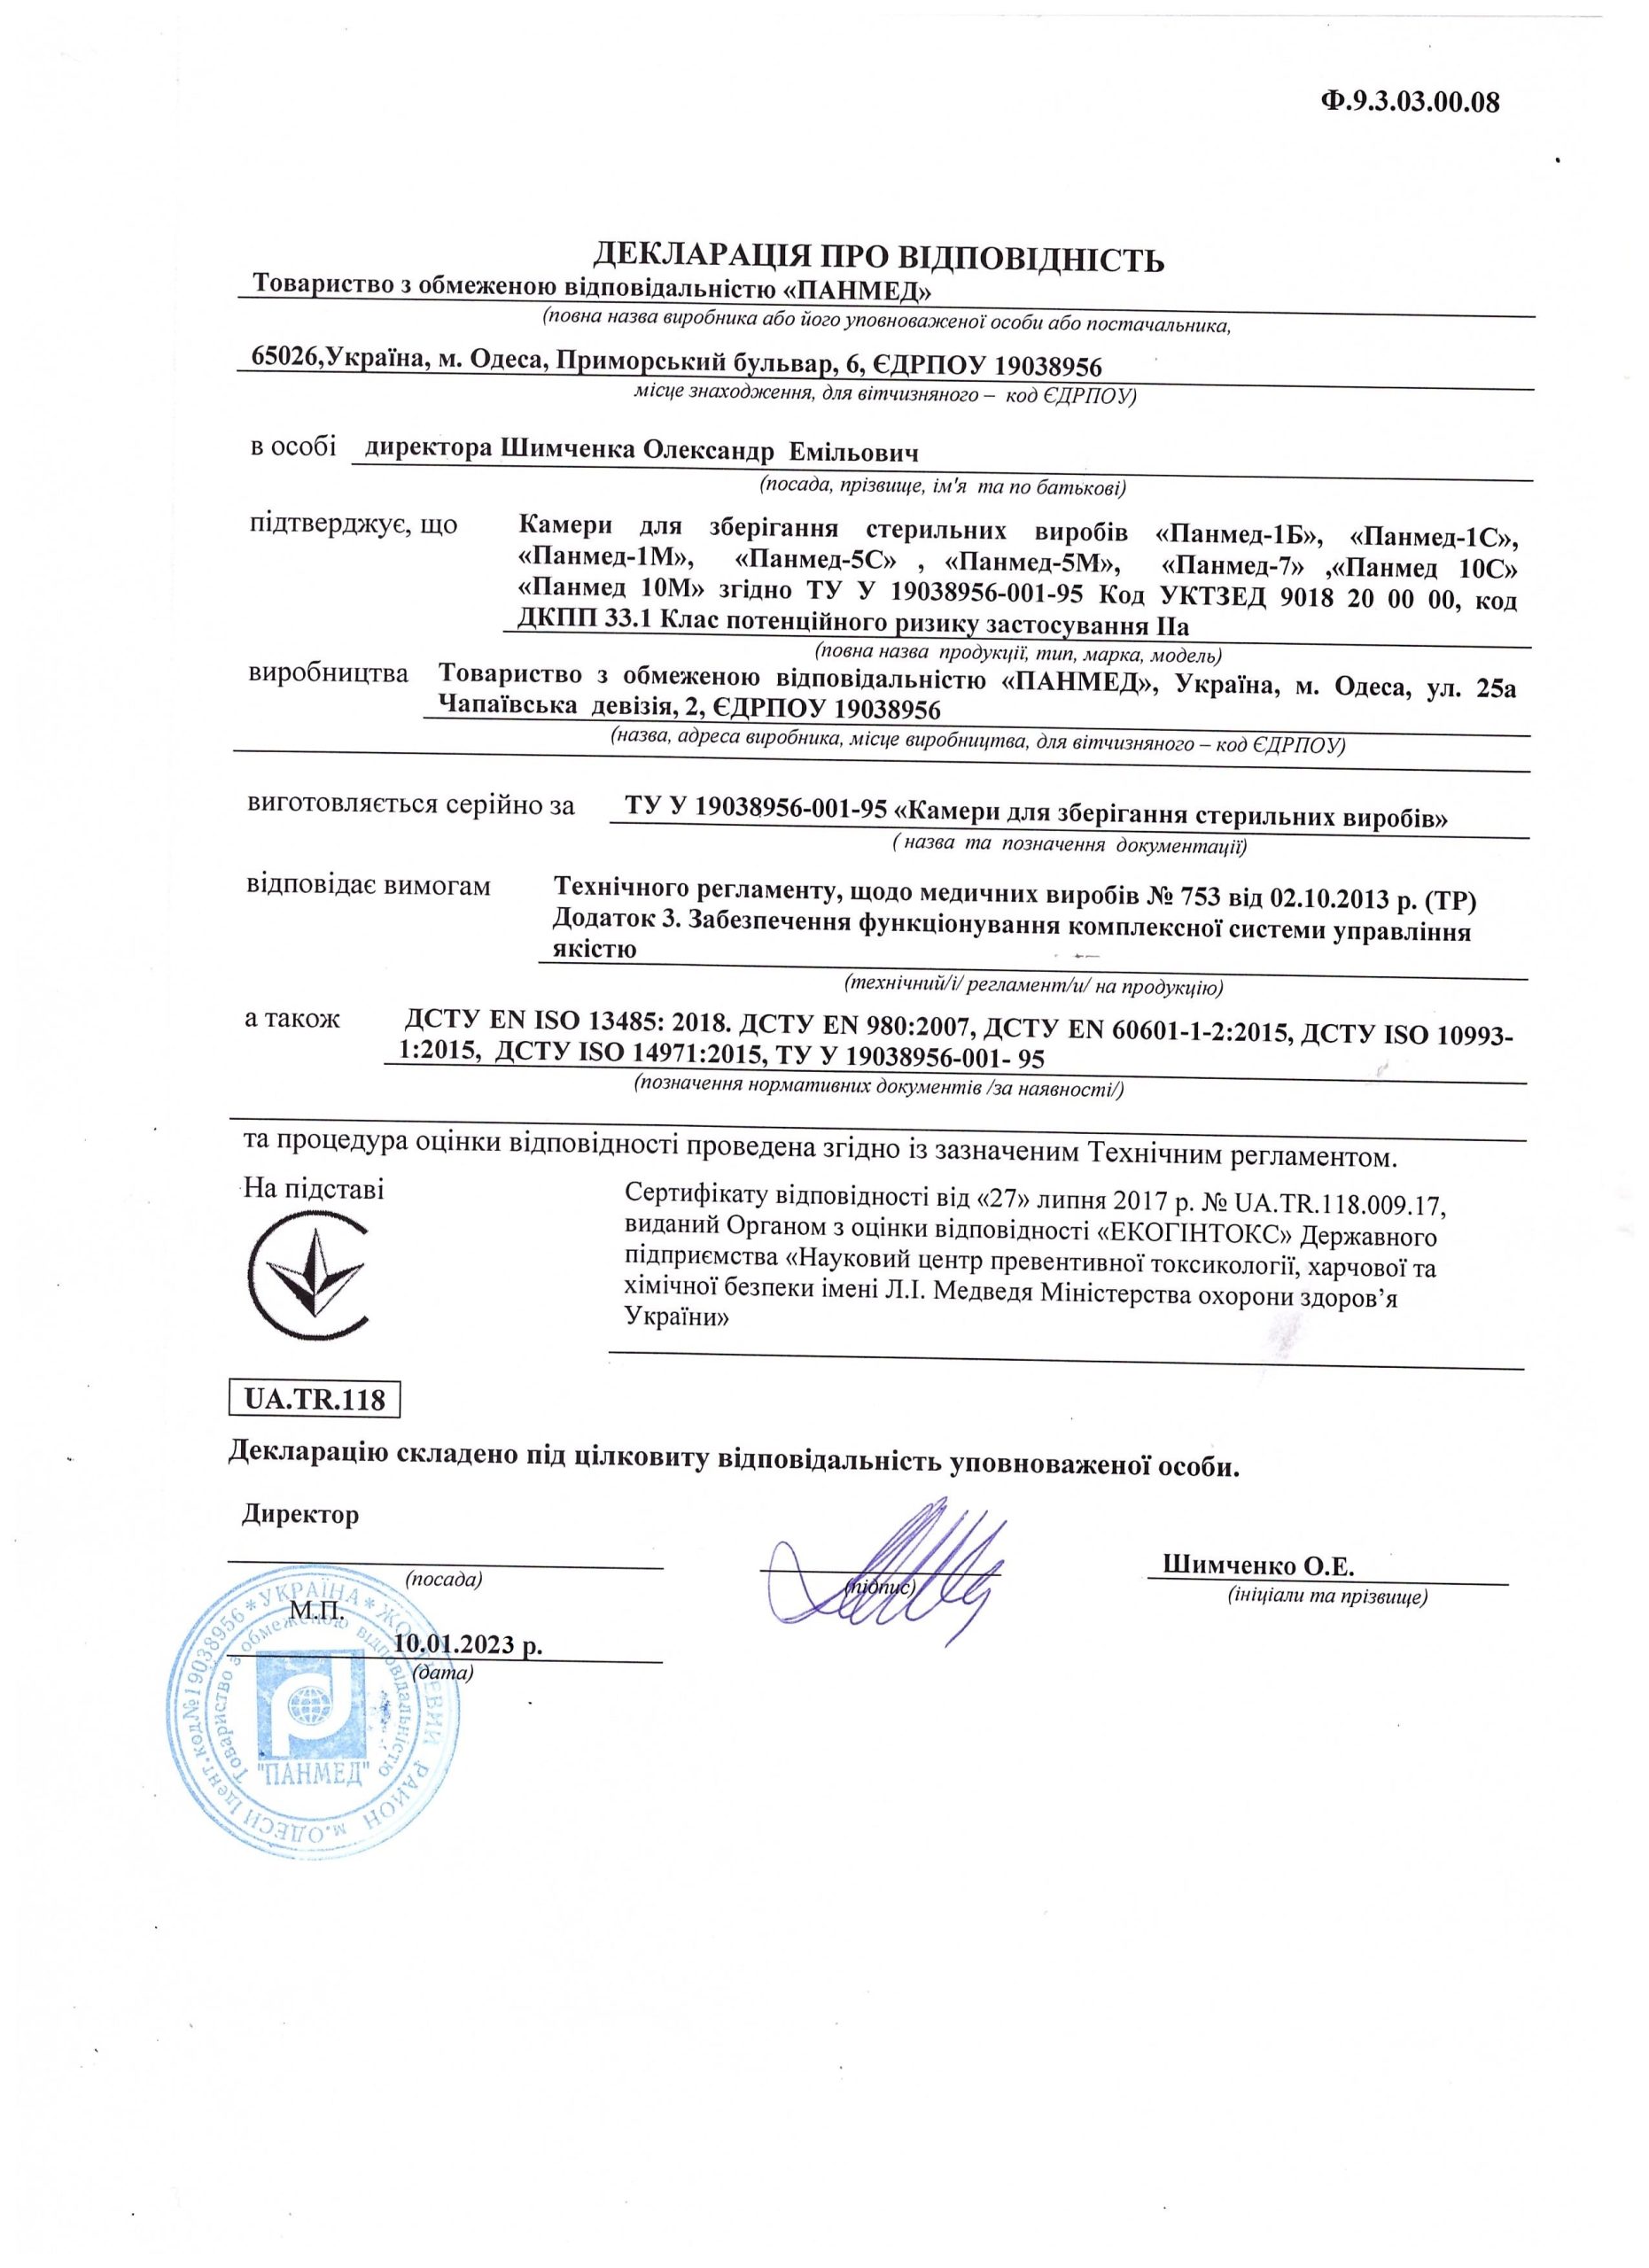 Декларація про відповідність на УФ камери для зберігання стерильних виробів